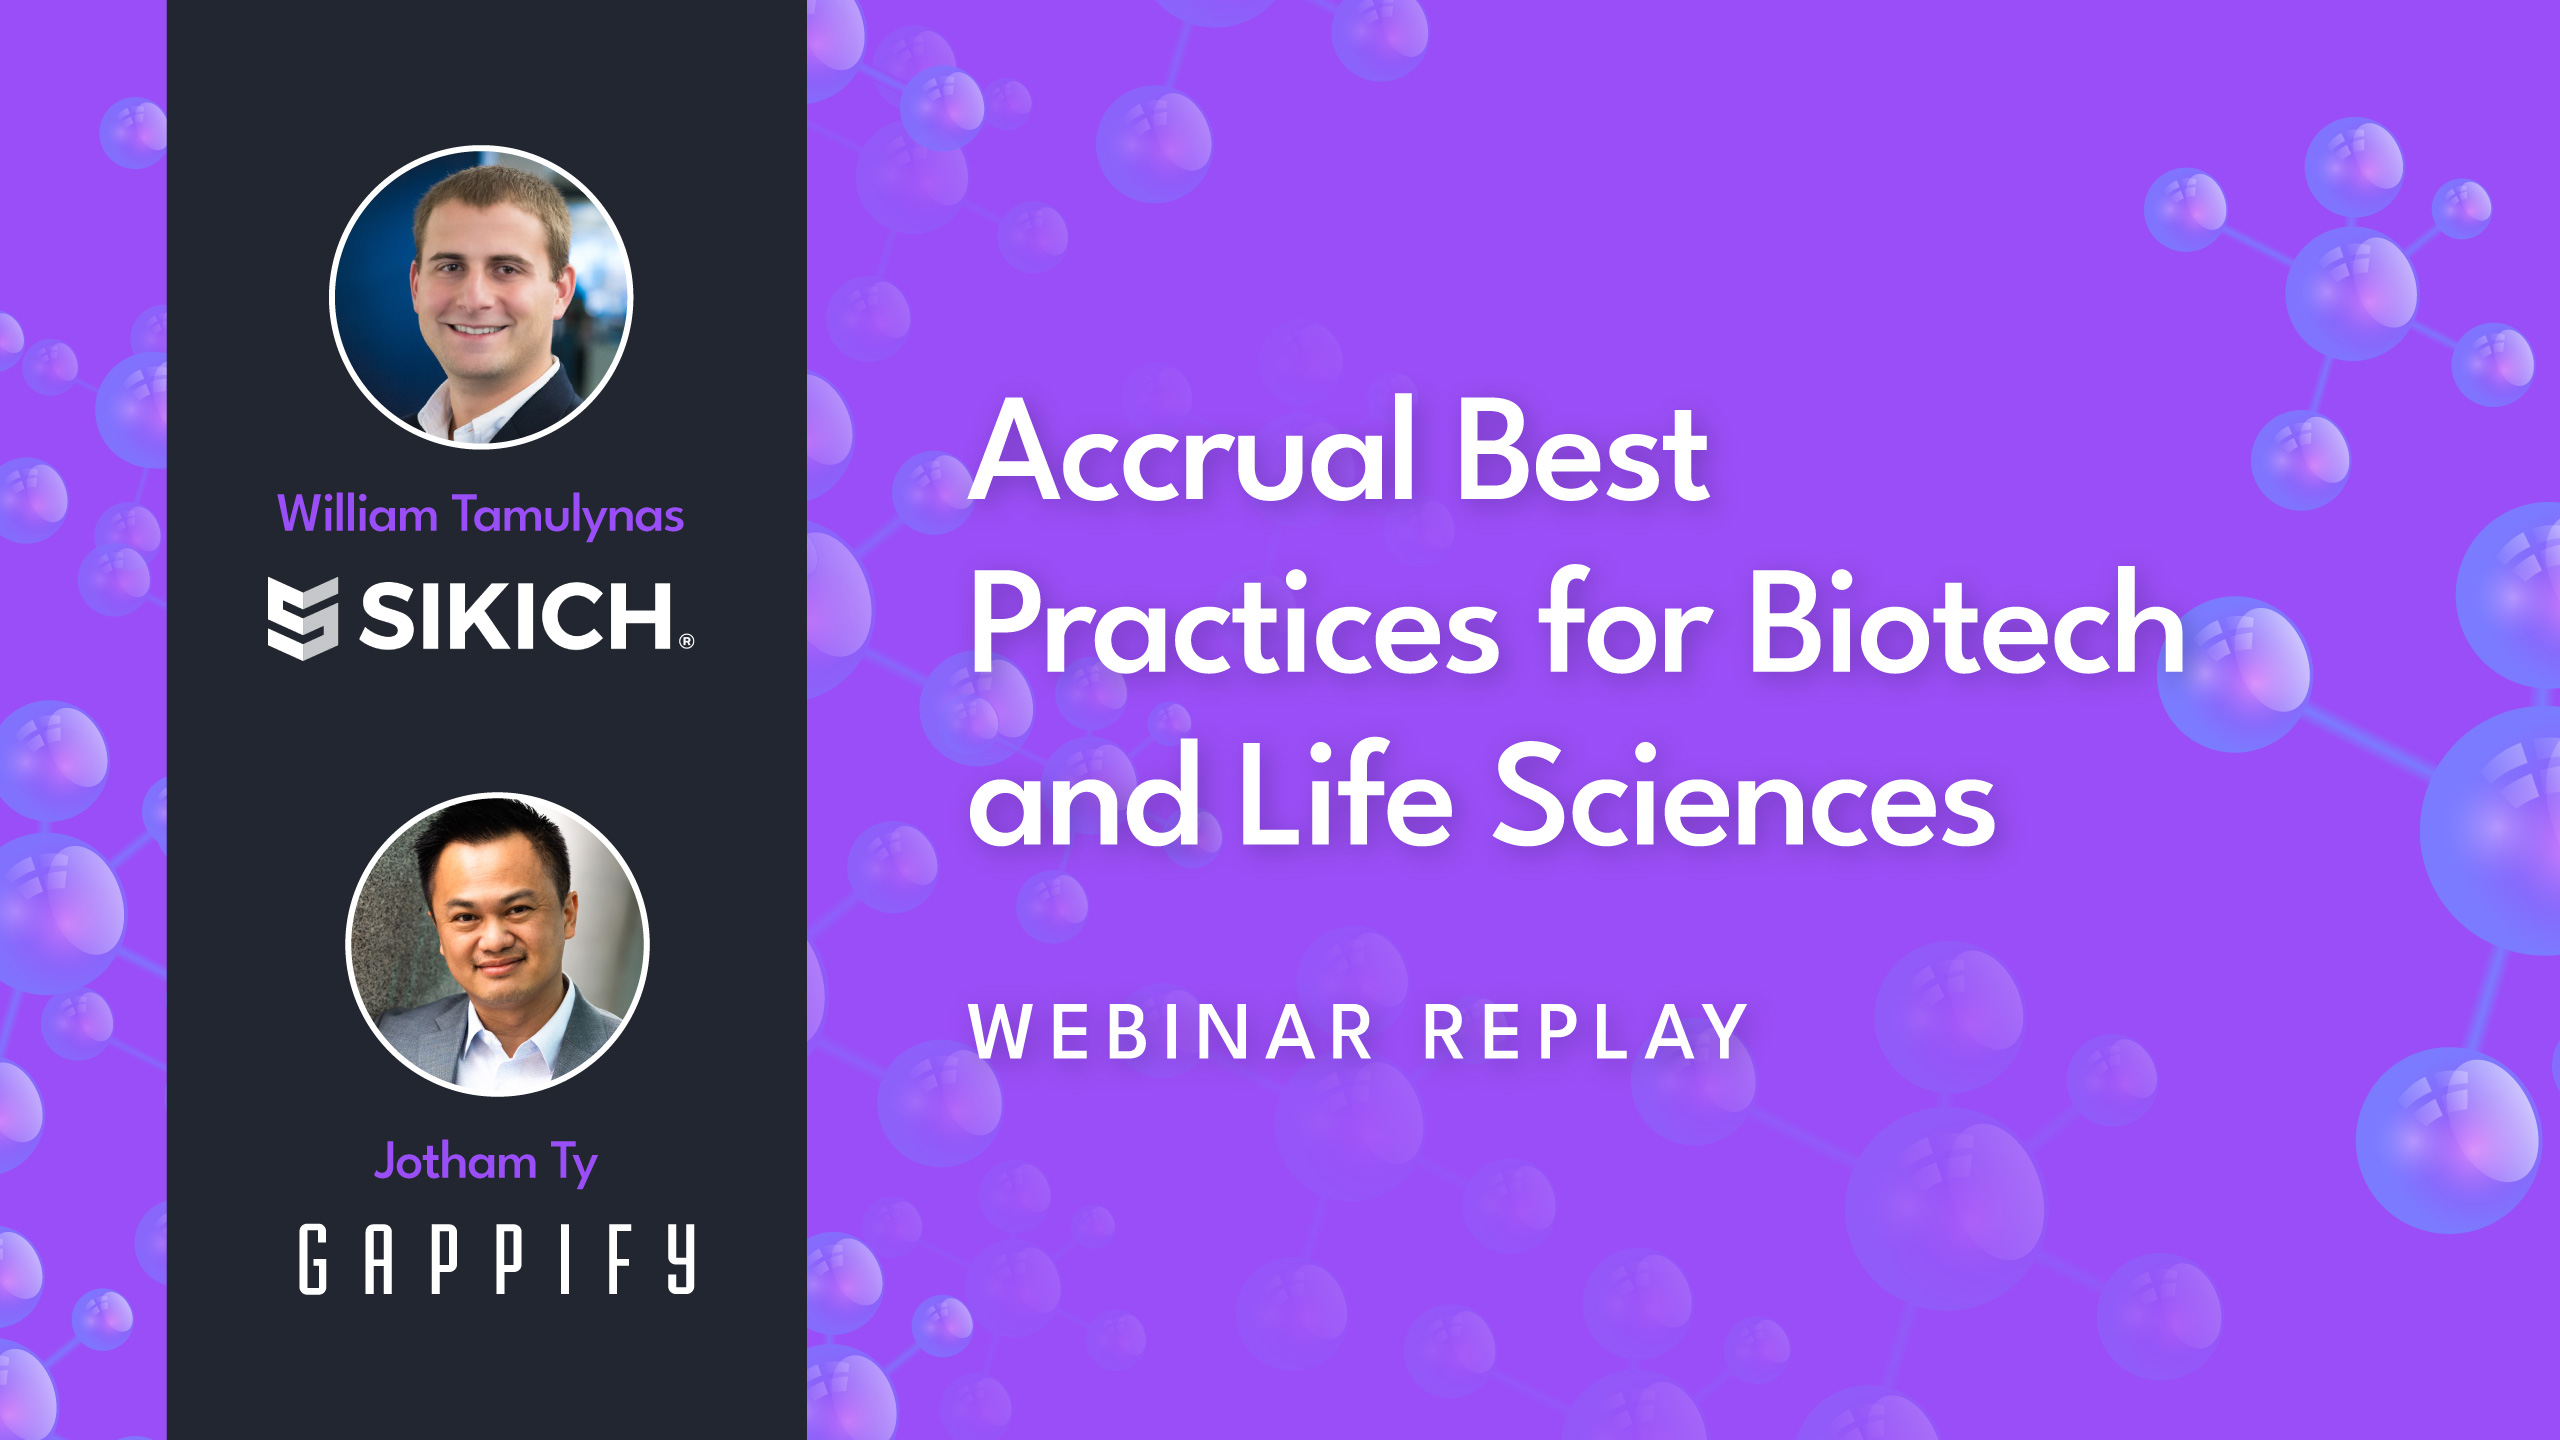 Webinar Accrual Best Practices Biotech